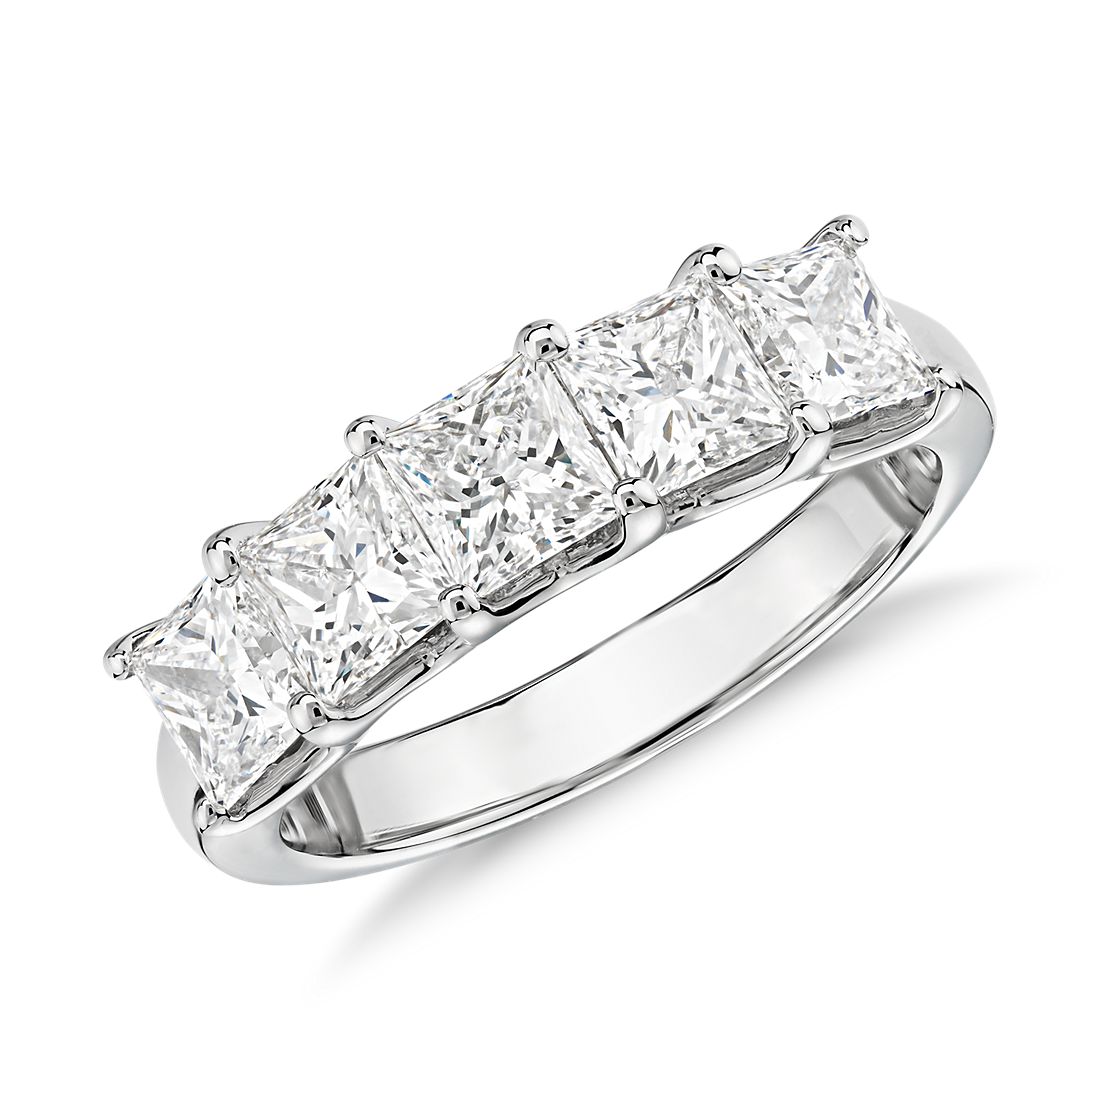 Blue Nile Signature Five-Stone Princess-Cut Diamond Ring in Platinum (2 ct. tw.)